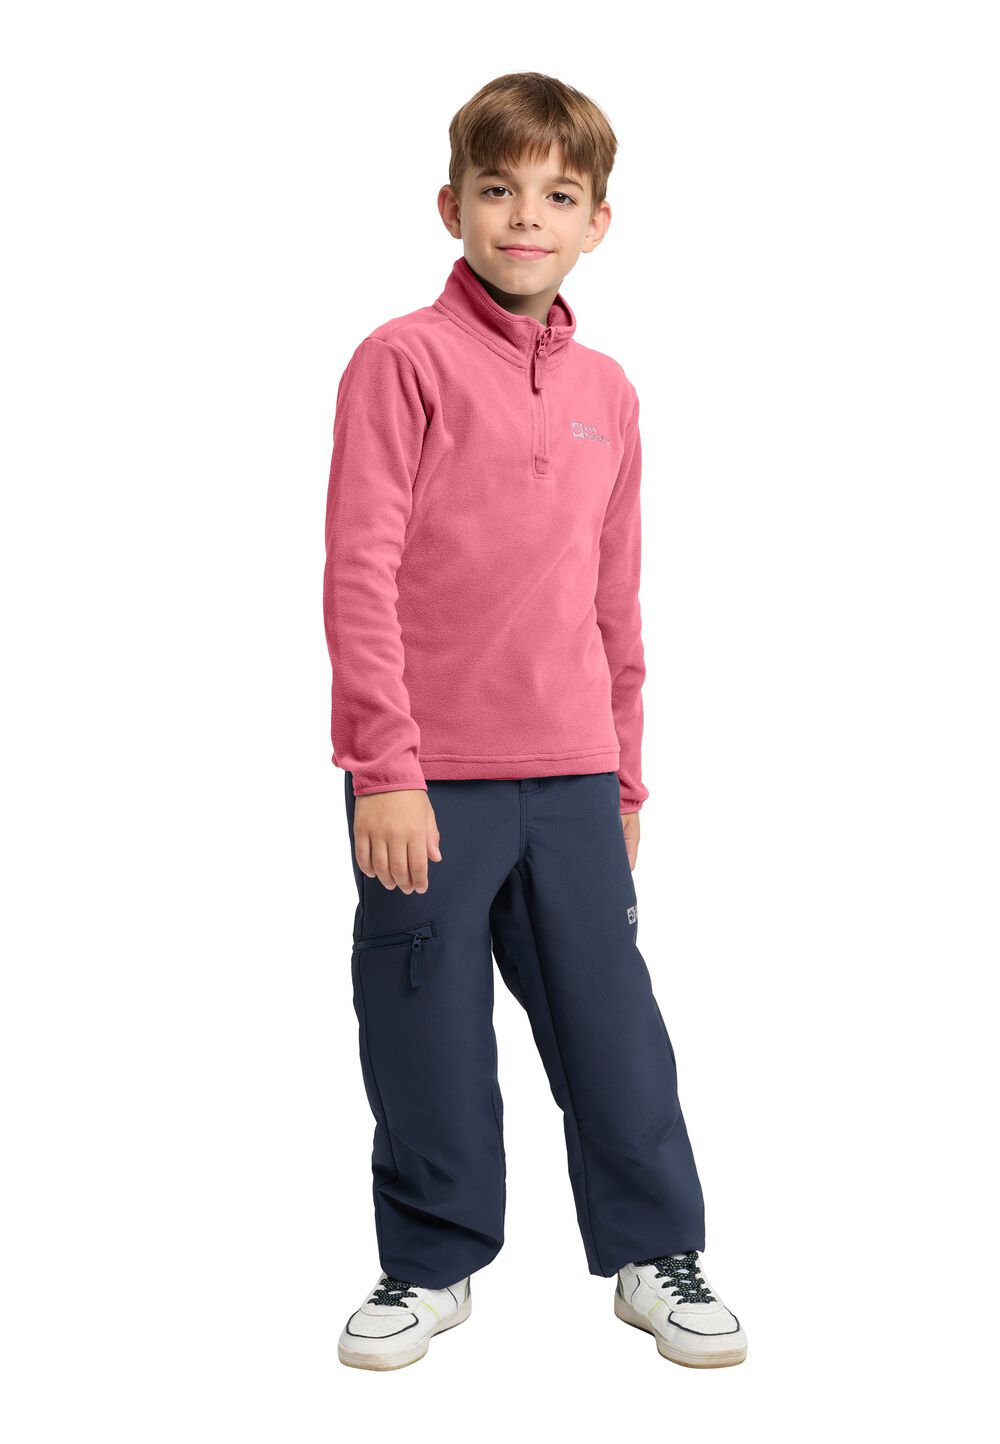 Jack Wolfskin Taunus Halfzip Kids Fleece trui Kinderen 116 soft pink soft pink